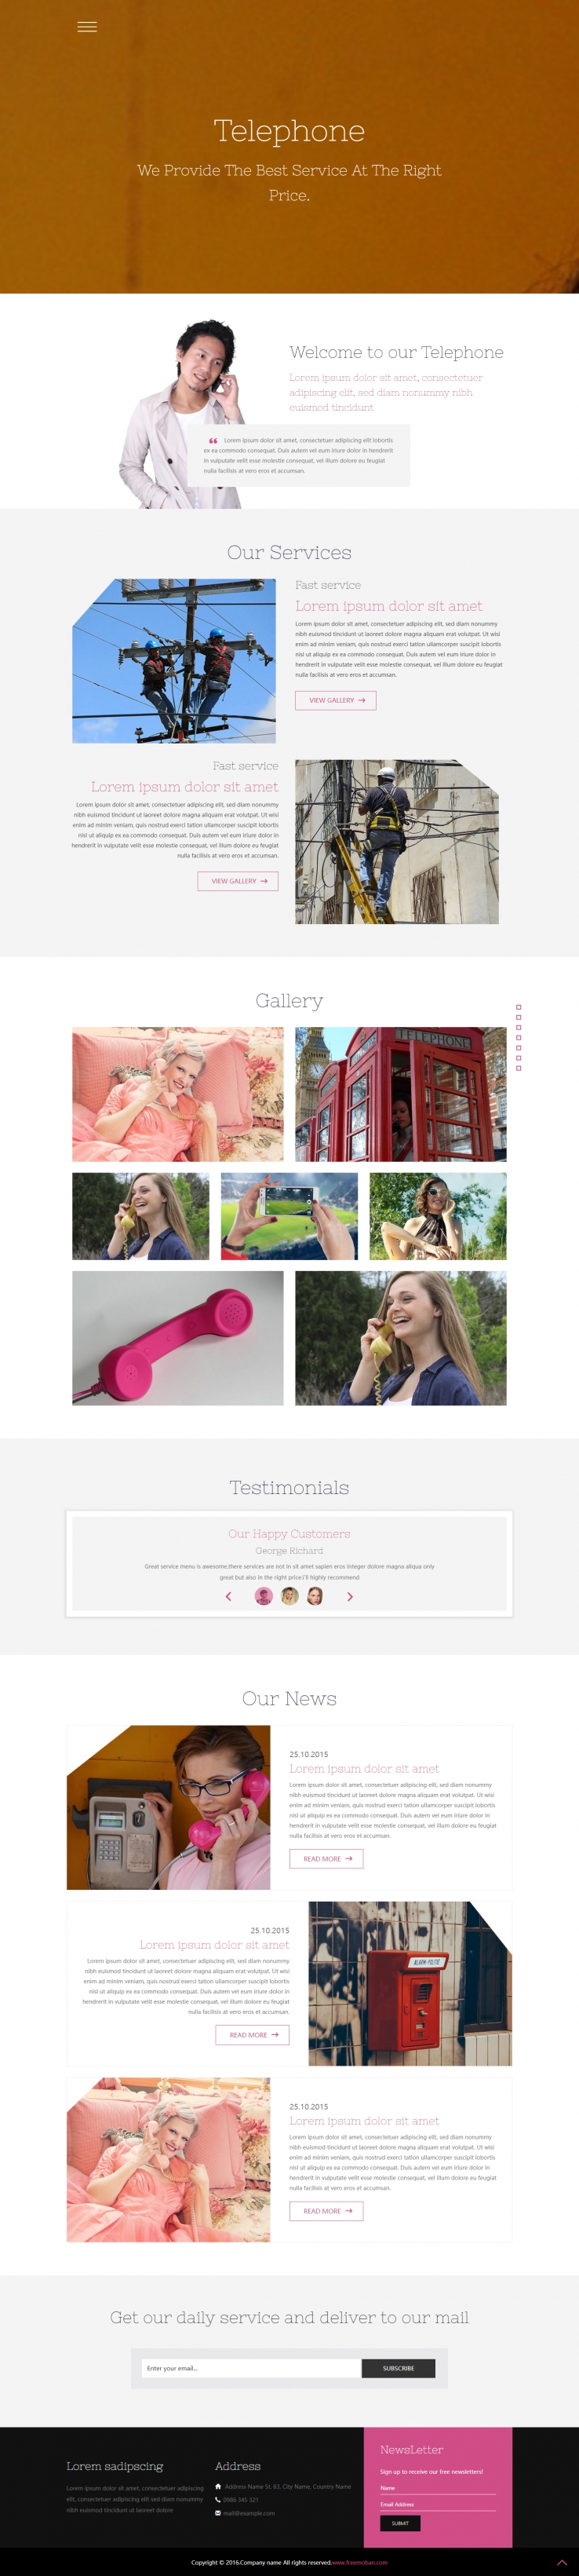 粉色简洁风格的手机电话通讯企业网站模板